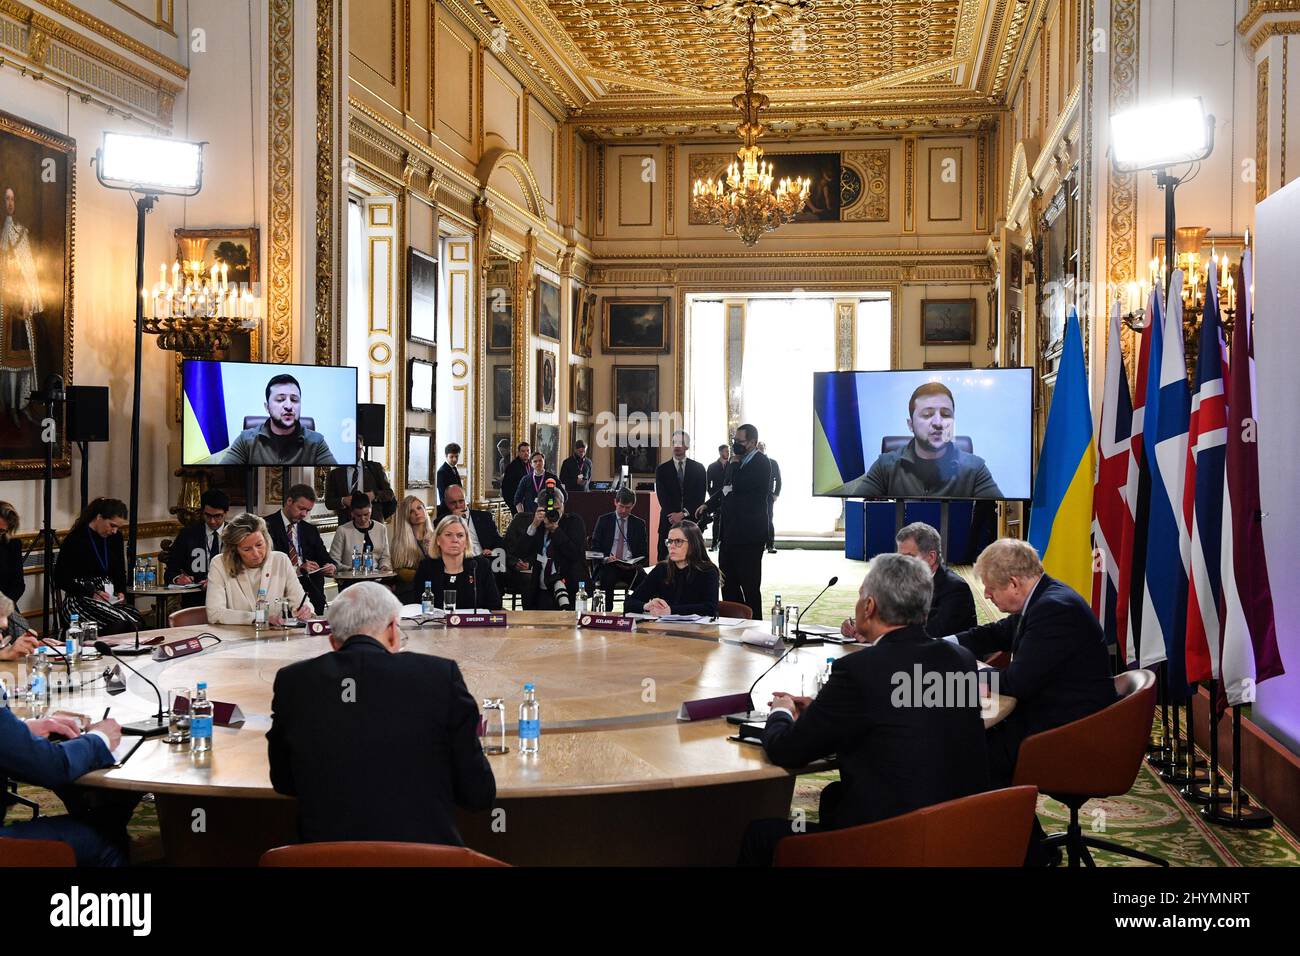 Der ukrainische Präsident Volodymyr Zelensky spricht bei einem Gipfeltreffen der Joint Expeditionary Force (JEF) in London von führenden Videoverbindern. Bilddatum: Dienstag, 15. März 2022. Stockfoto